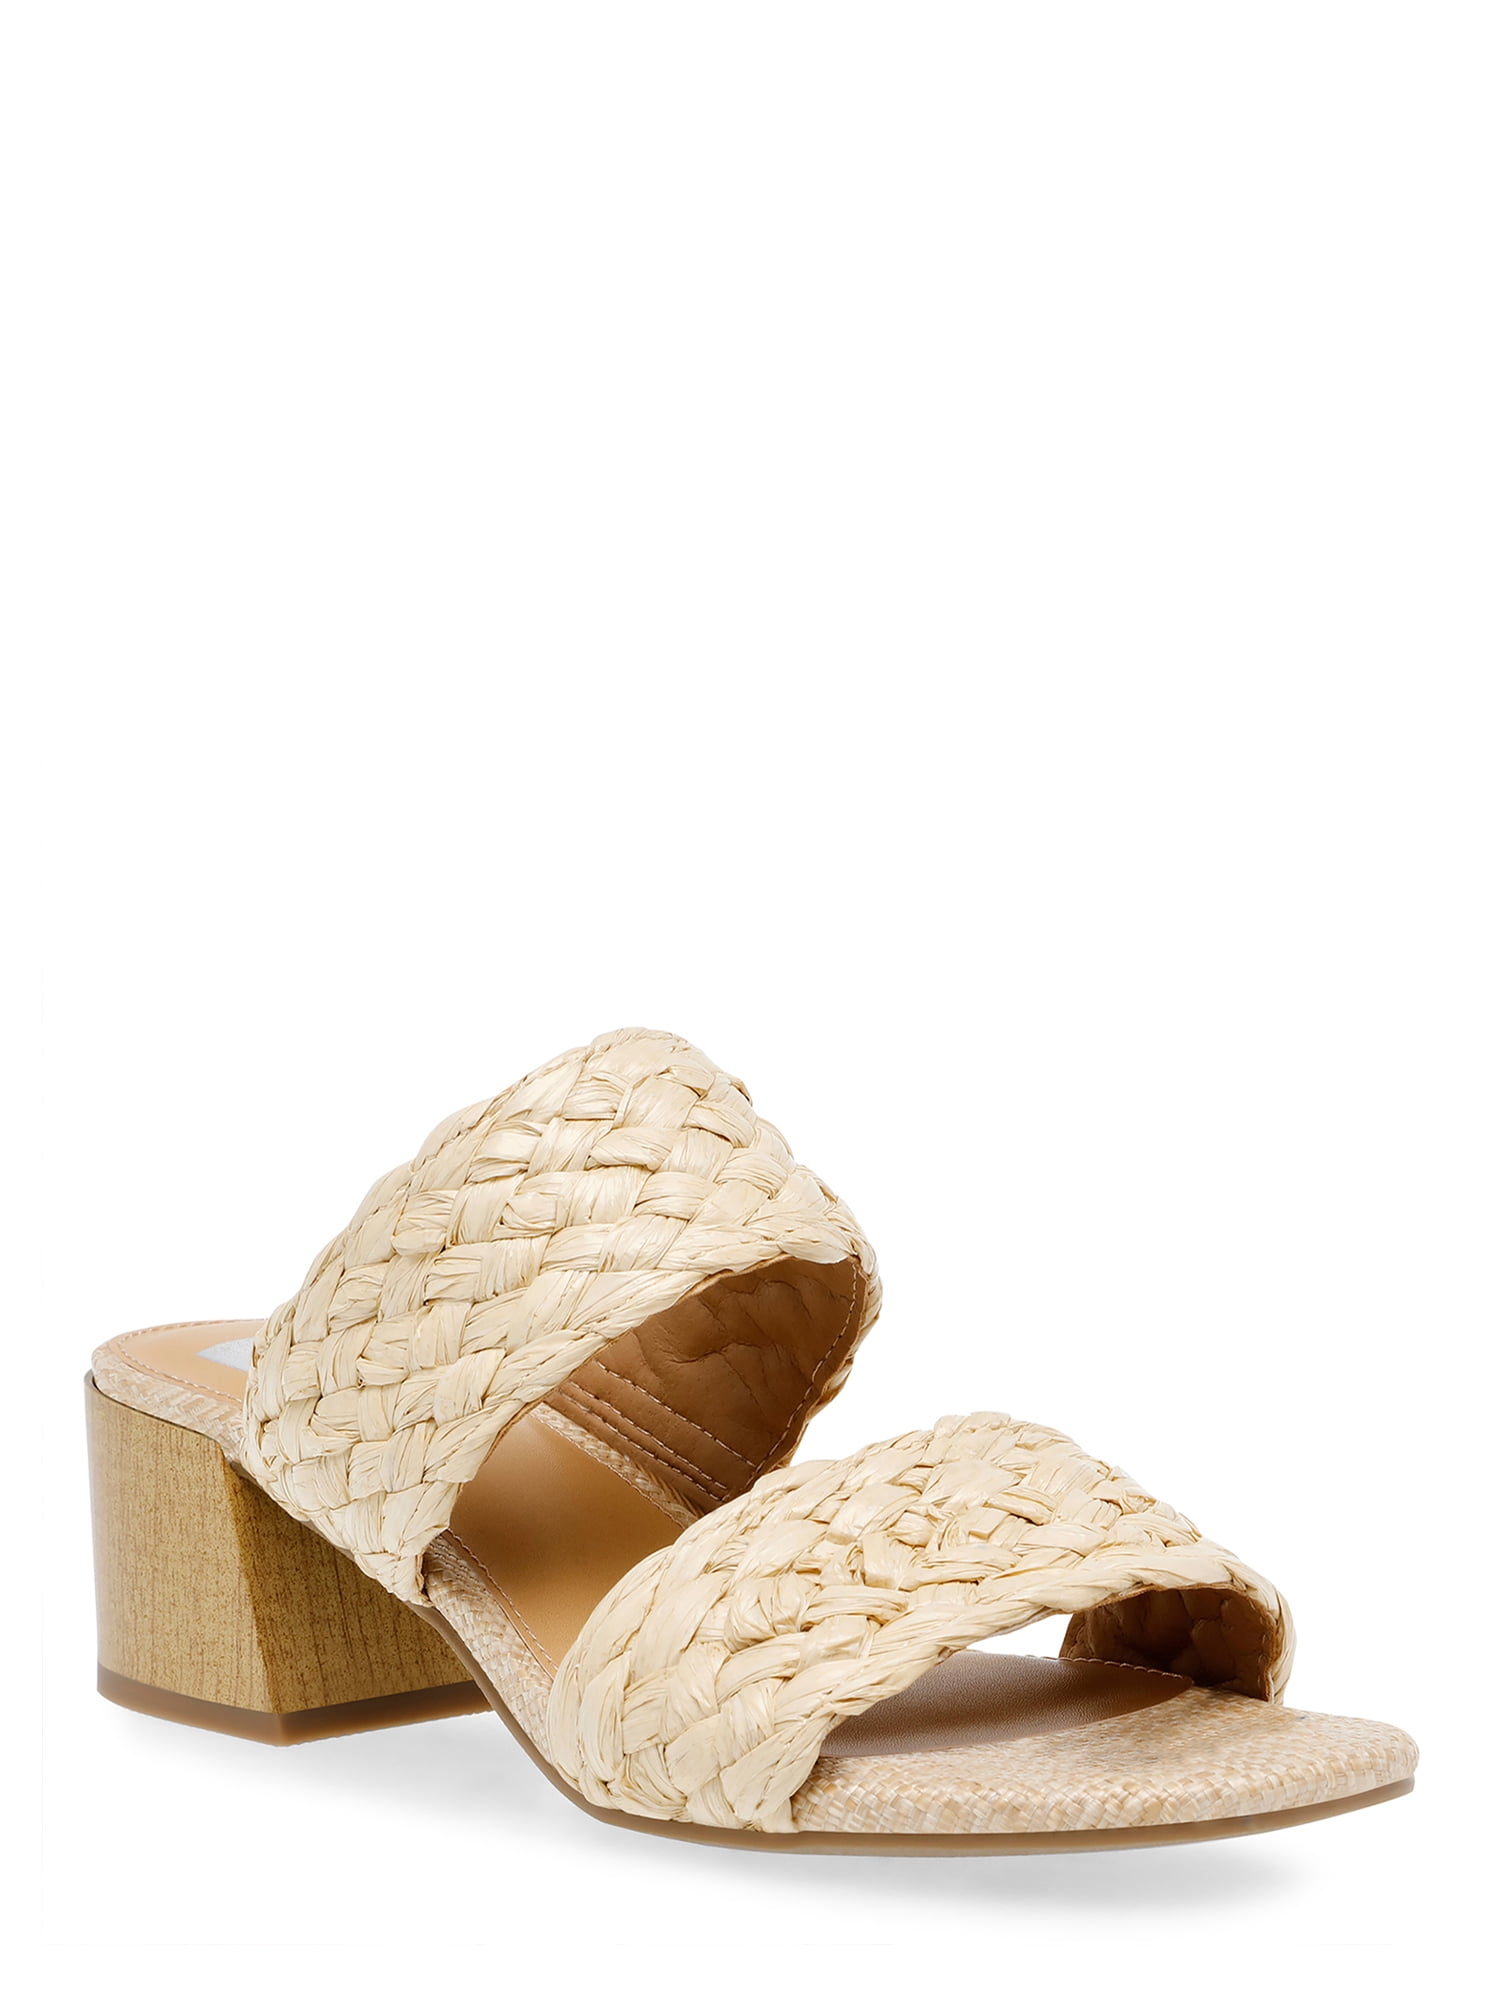 DV Dolce Vita Women's Stacey Braided Block Heel Sandals - Walmart.com